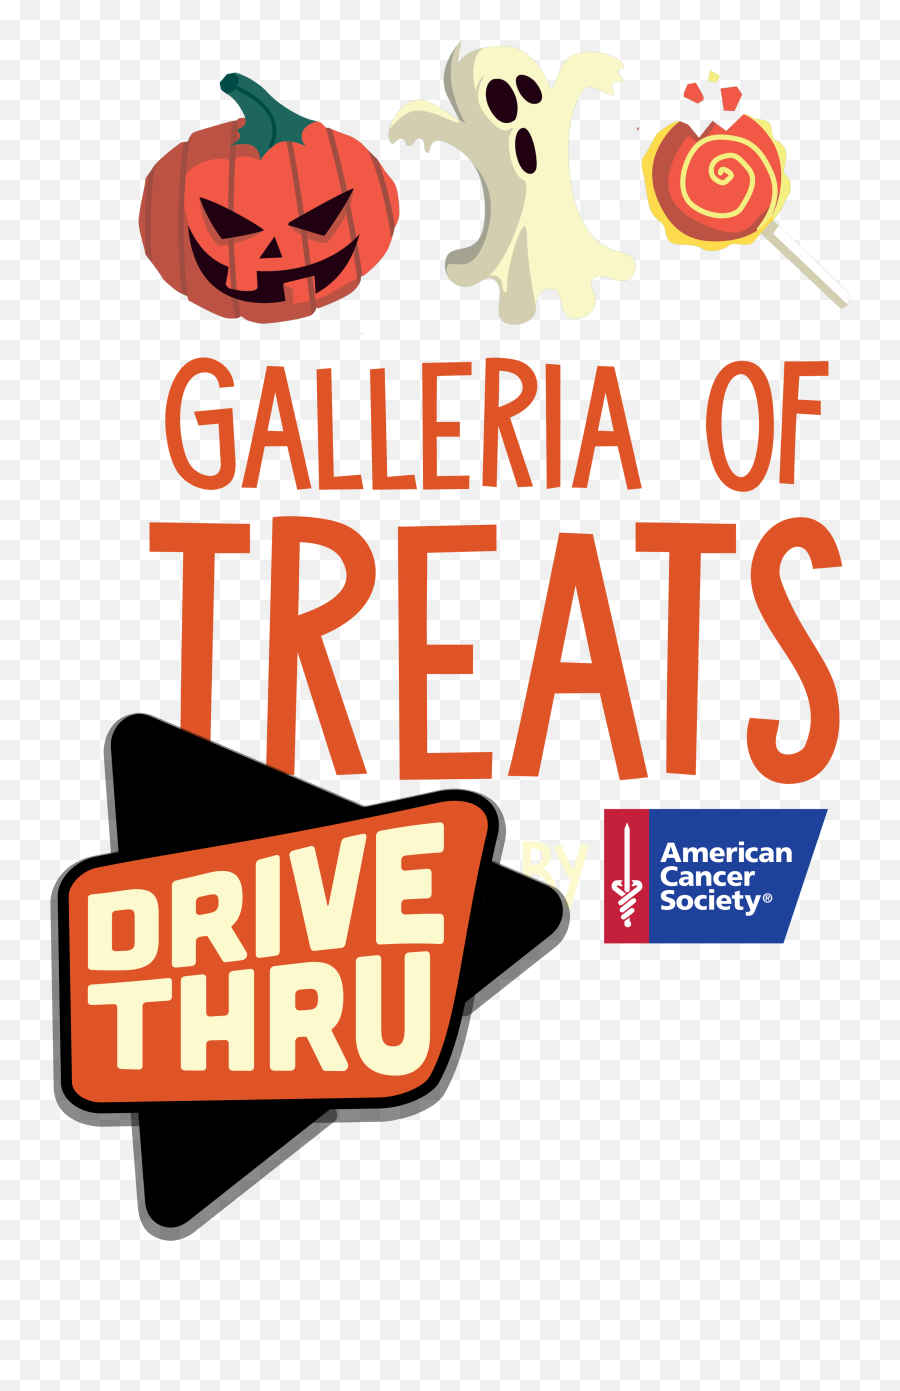 Galleria Of Treats Drive Thru - Walden Galleria Making Strides Emoji,American Cancer Society Logo